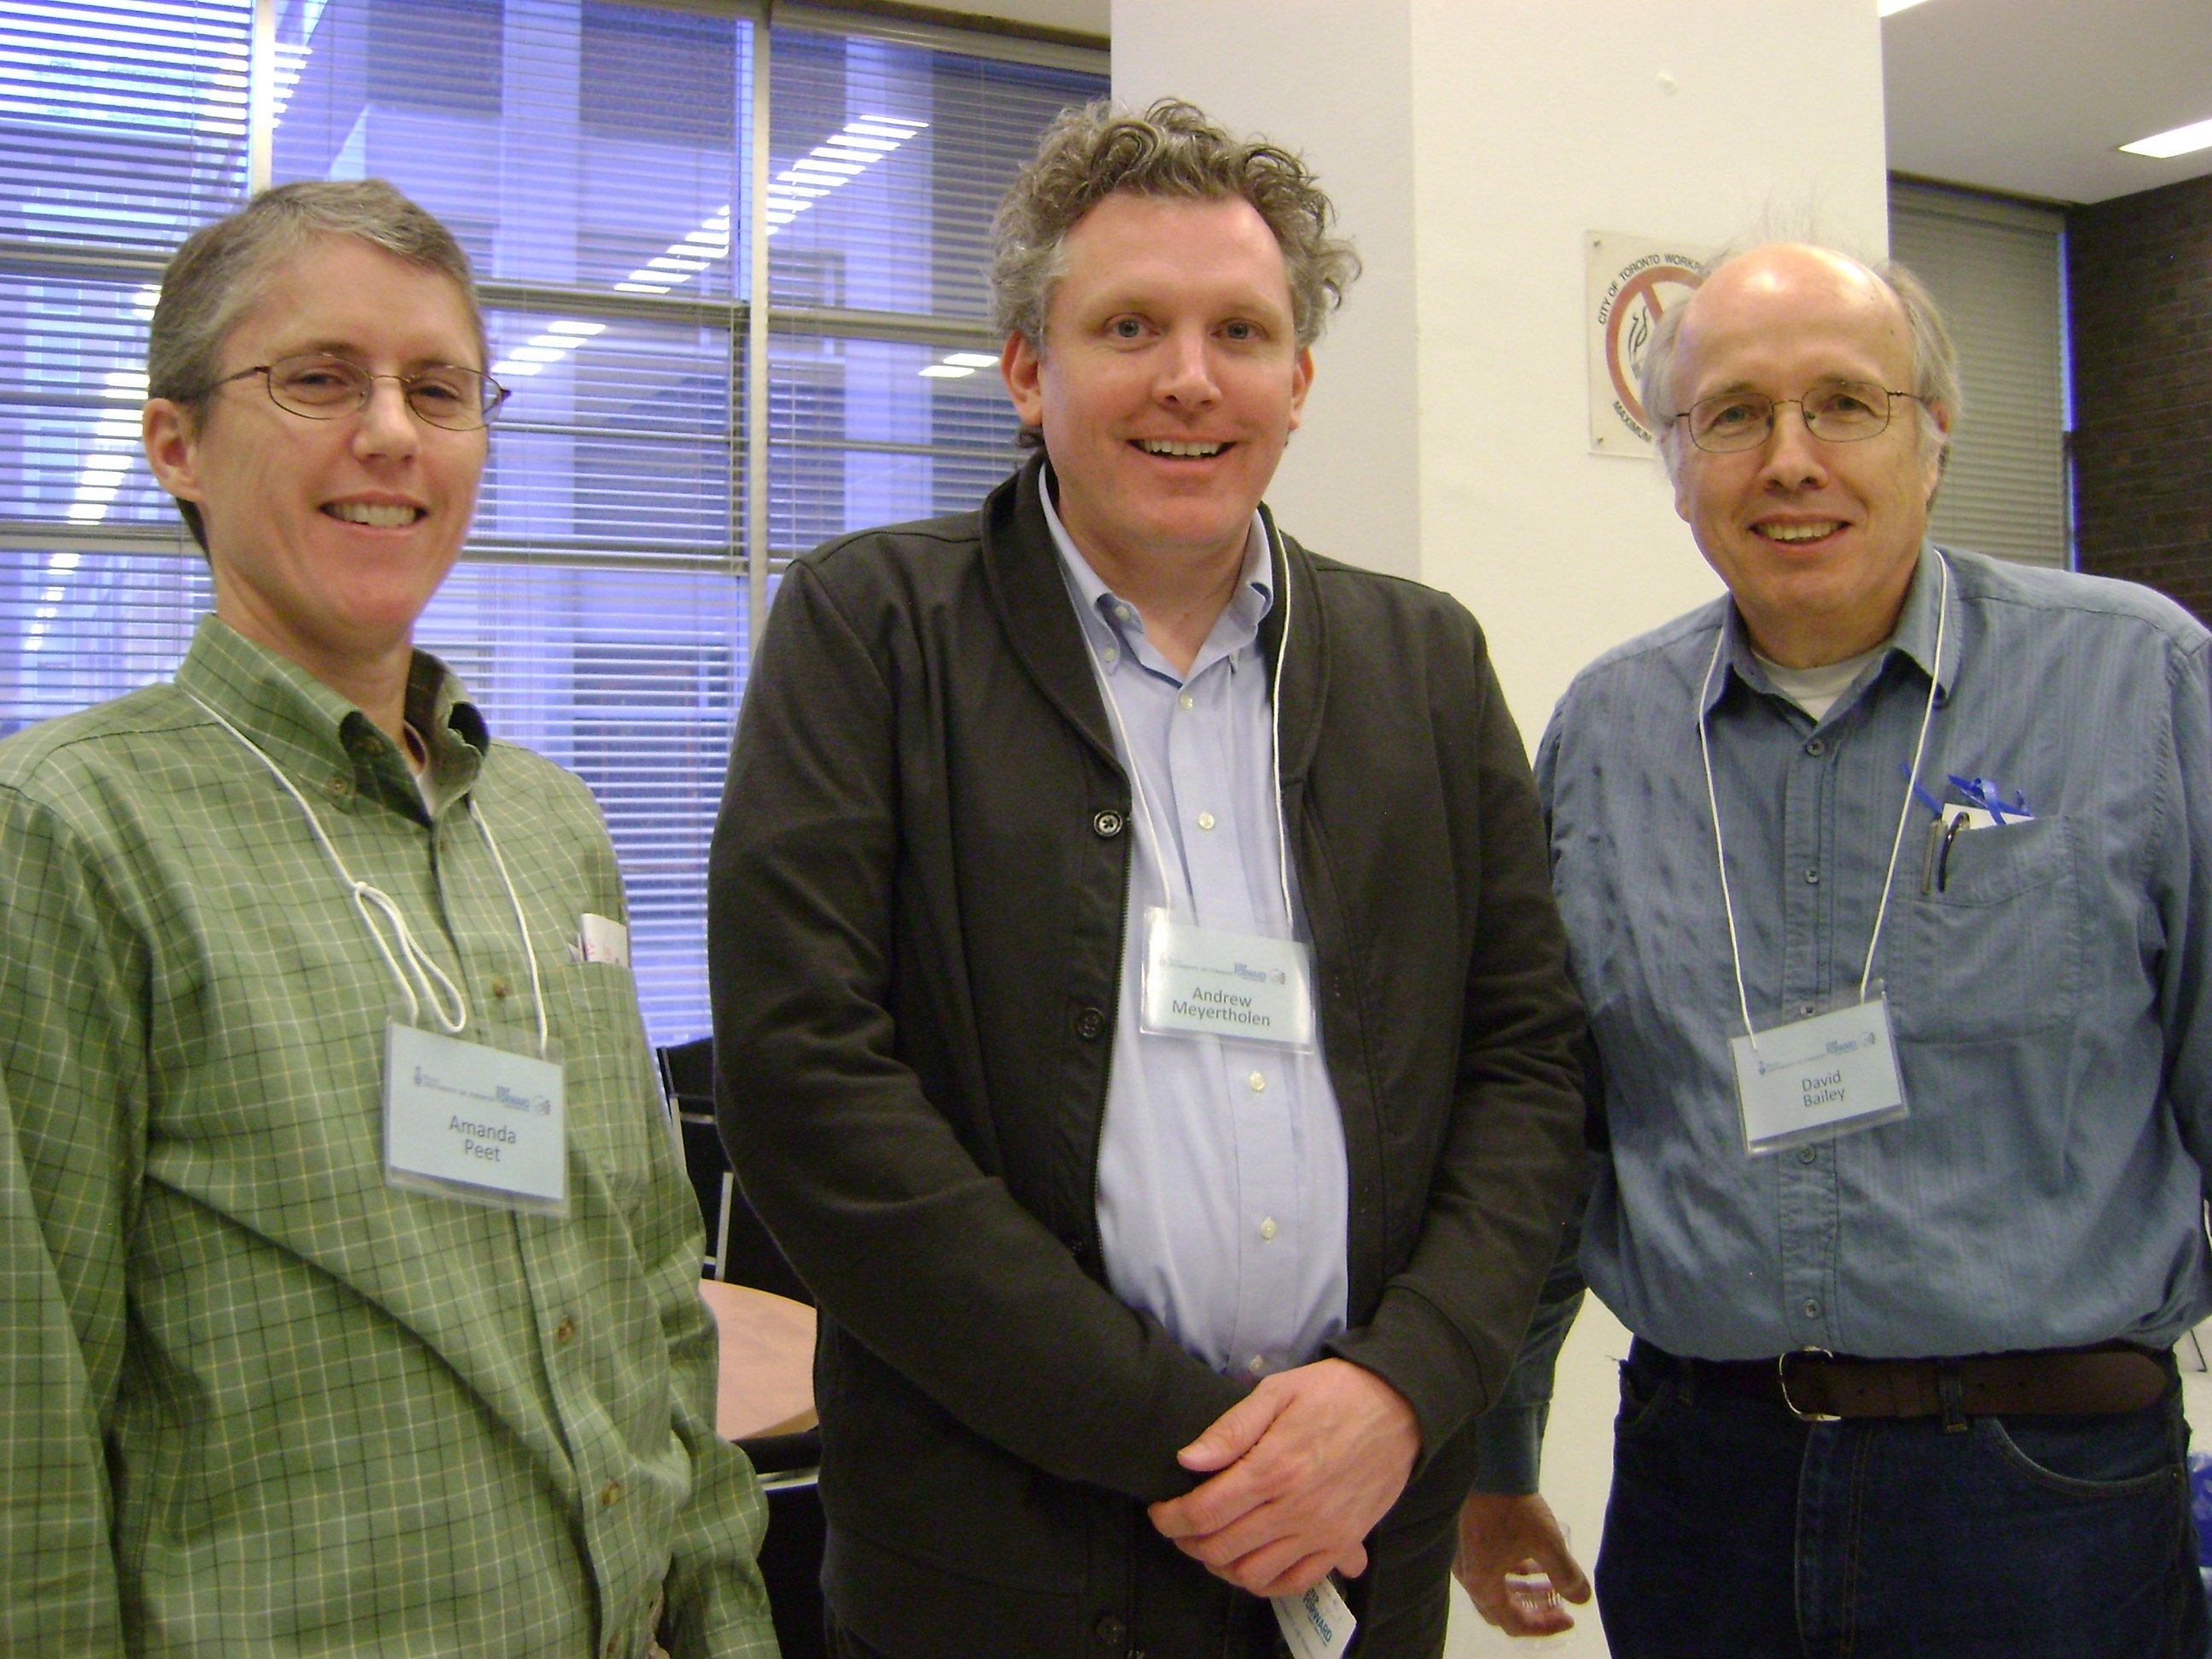 Mentors A.W. Peet, Andrew Meyertholen and David Bailey